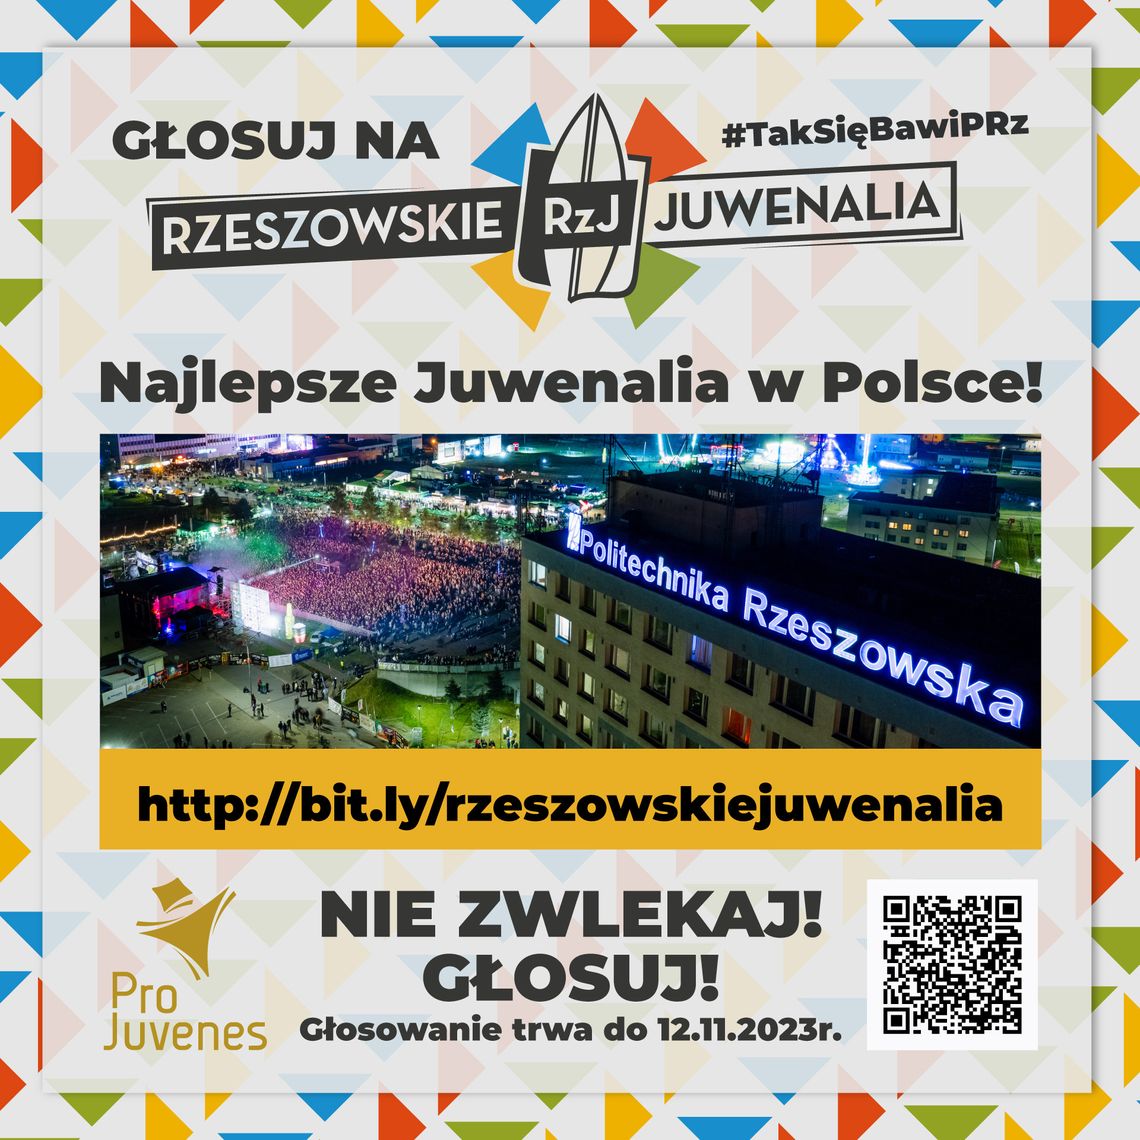 Rzeszowskie Juwenalia Politechniki Rzeszowskiej nominowane w kategorii „Najlepsze Juwenalia w Polsce"!